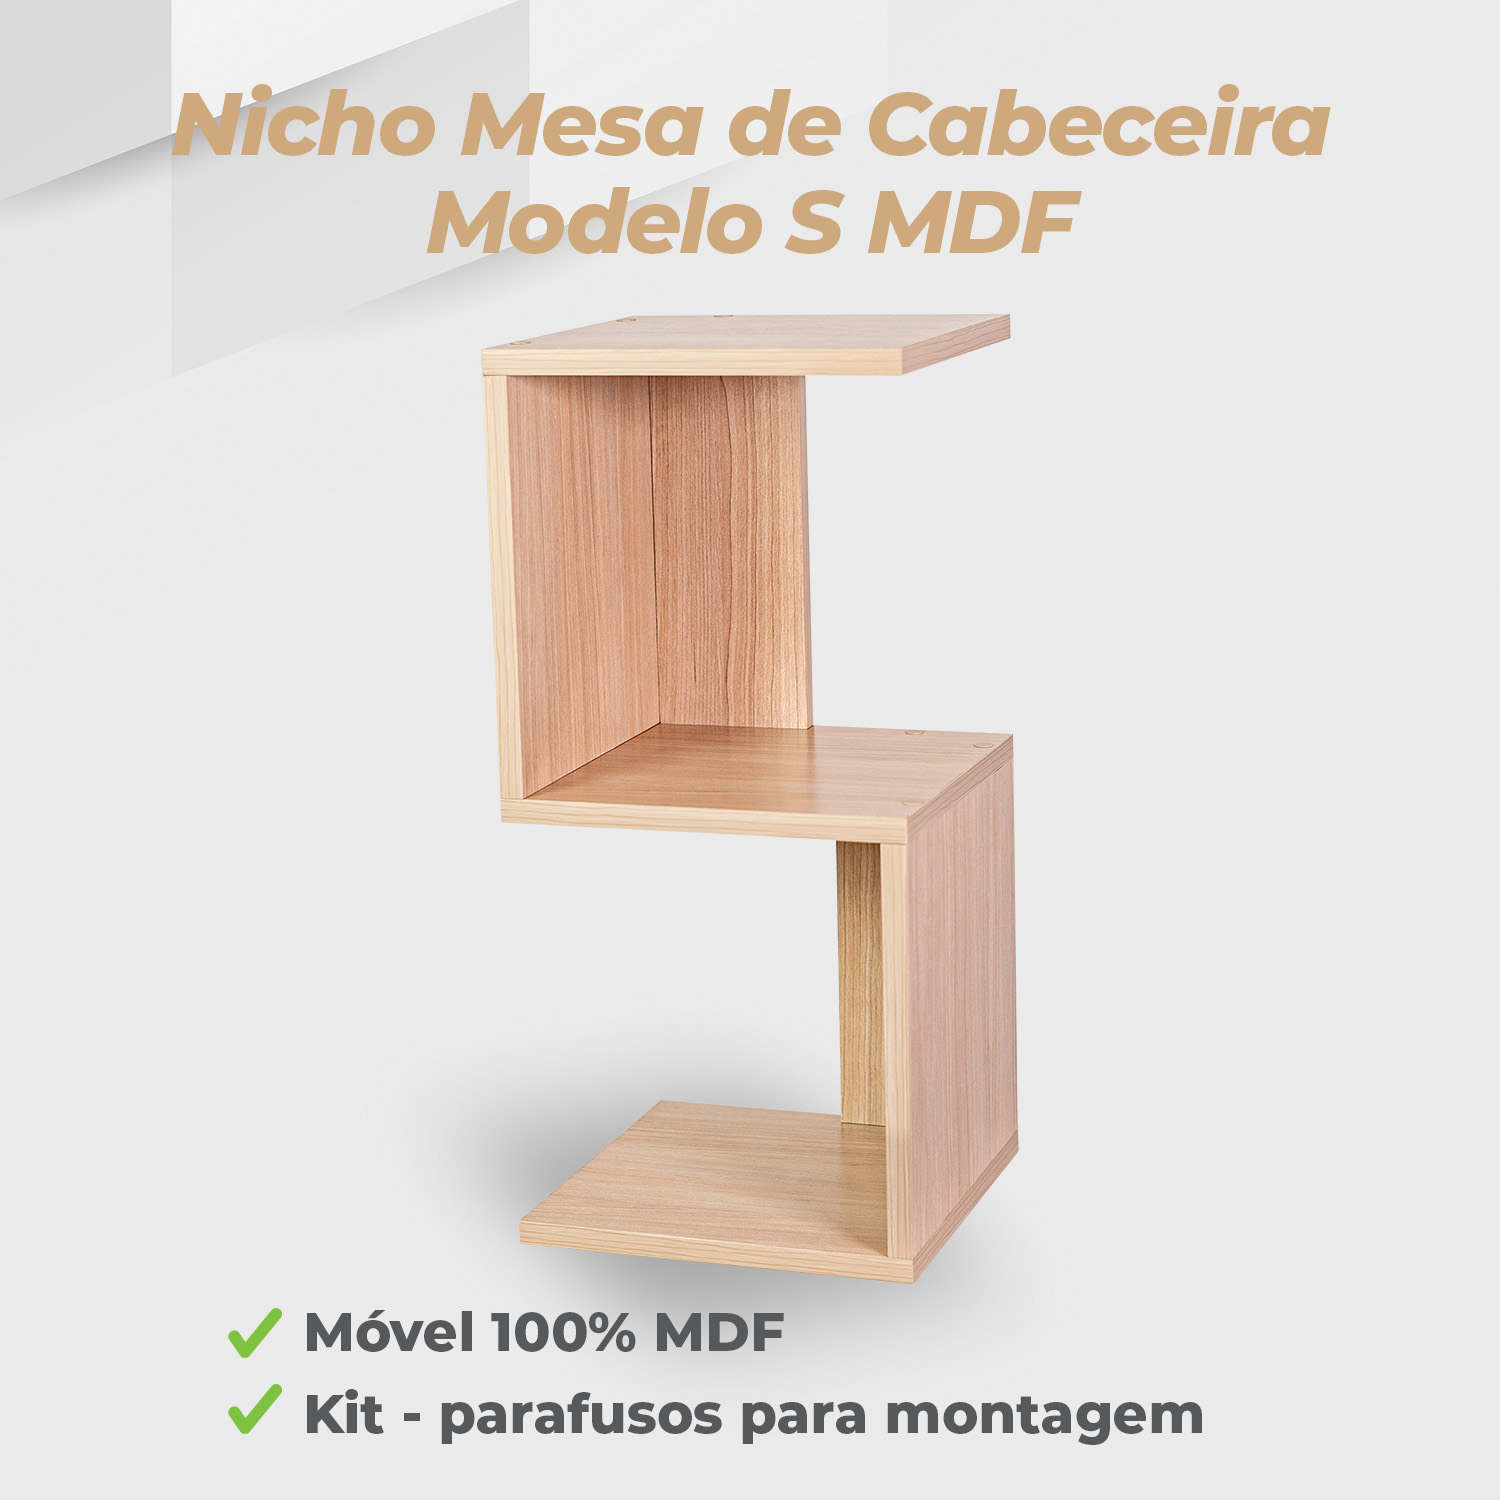 Nicho Mesa De Cabeceira Modelo S MDF Ciliegio